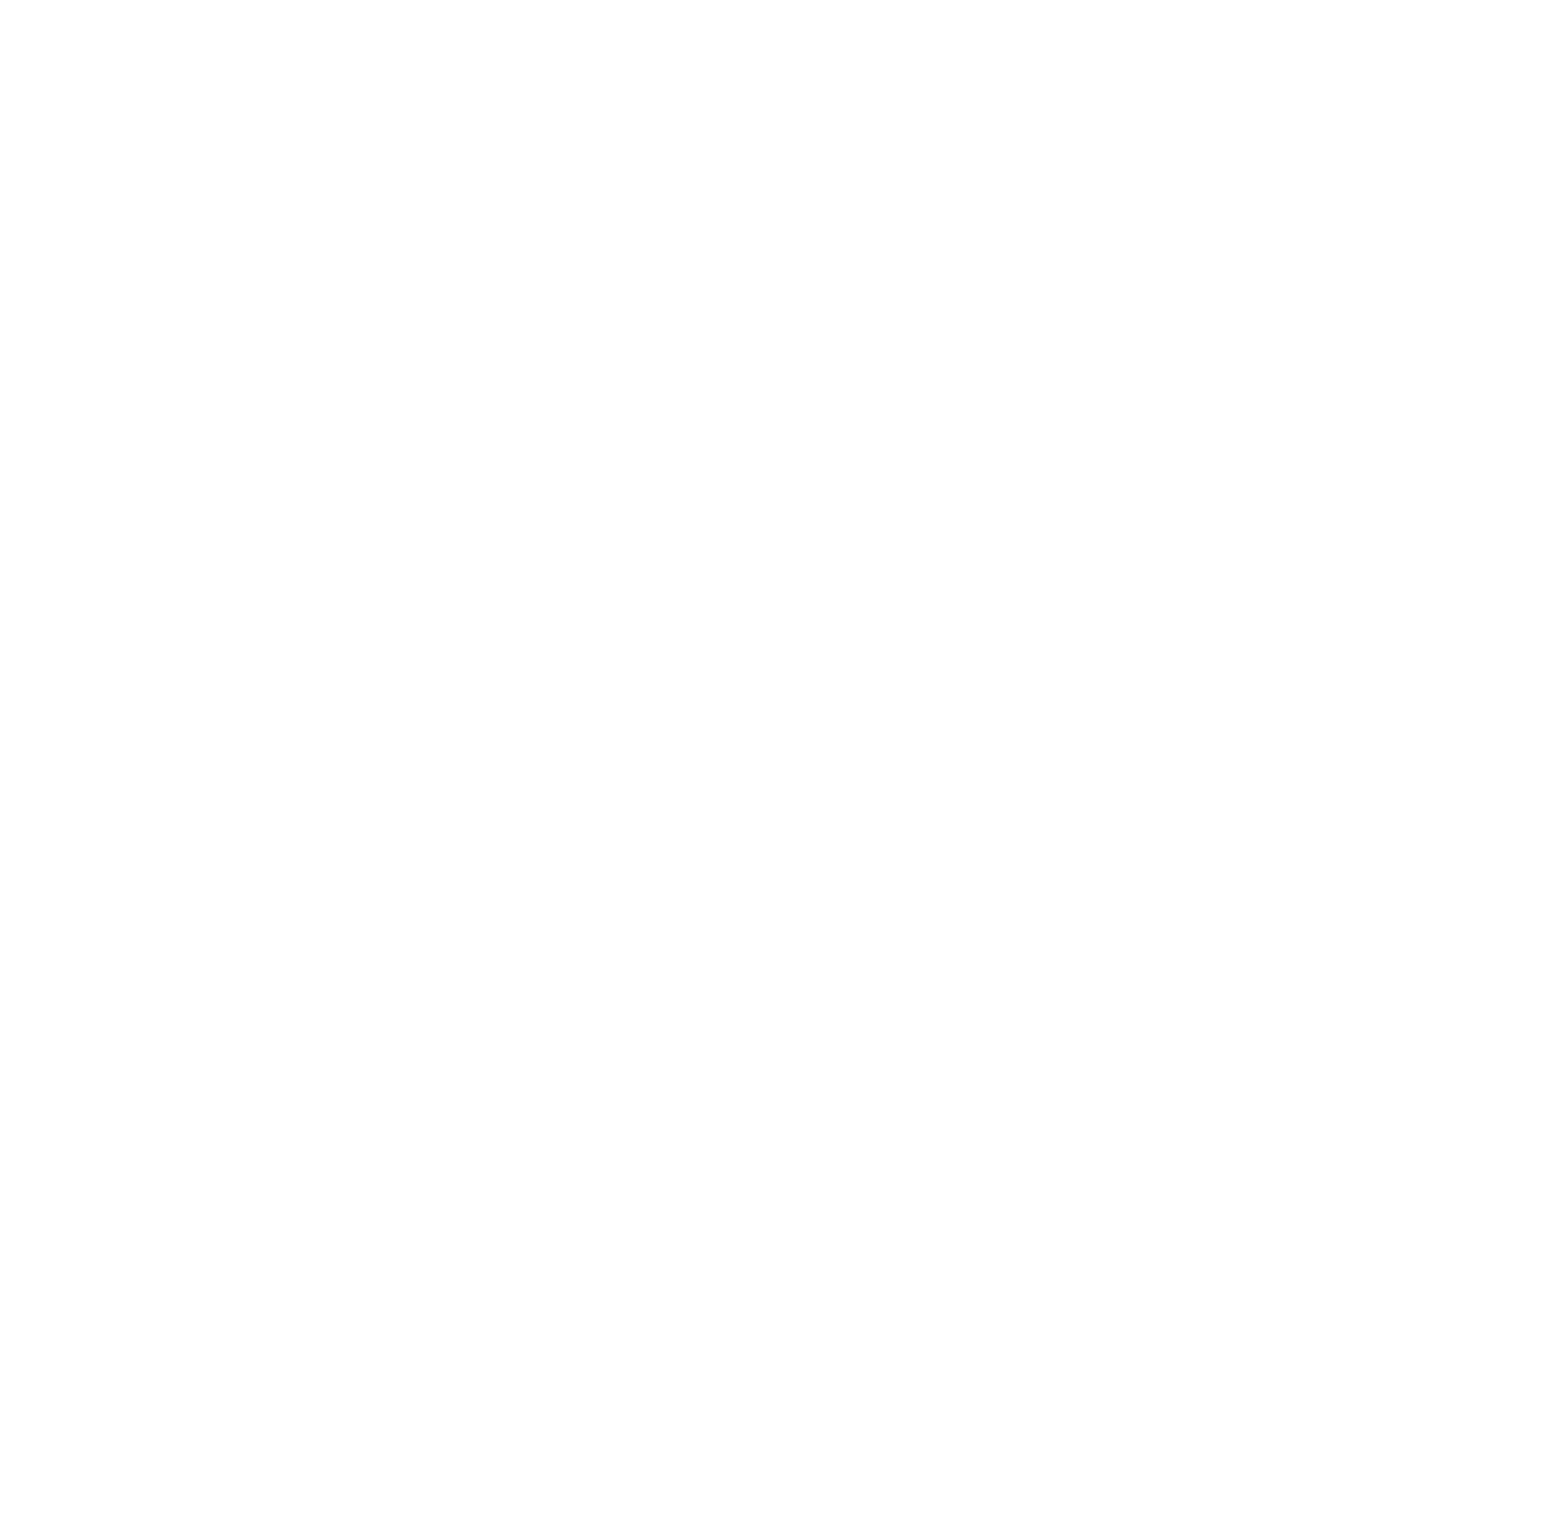 Prosus logo large for dark backgrounds (transparent PNG)